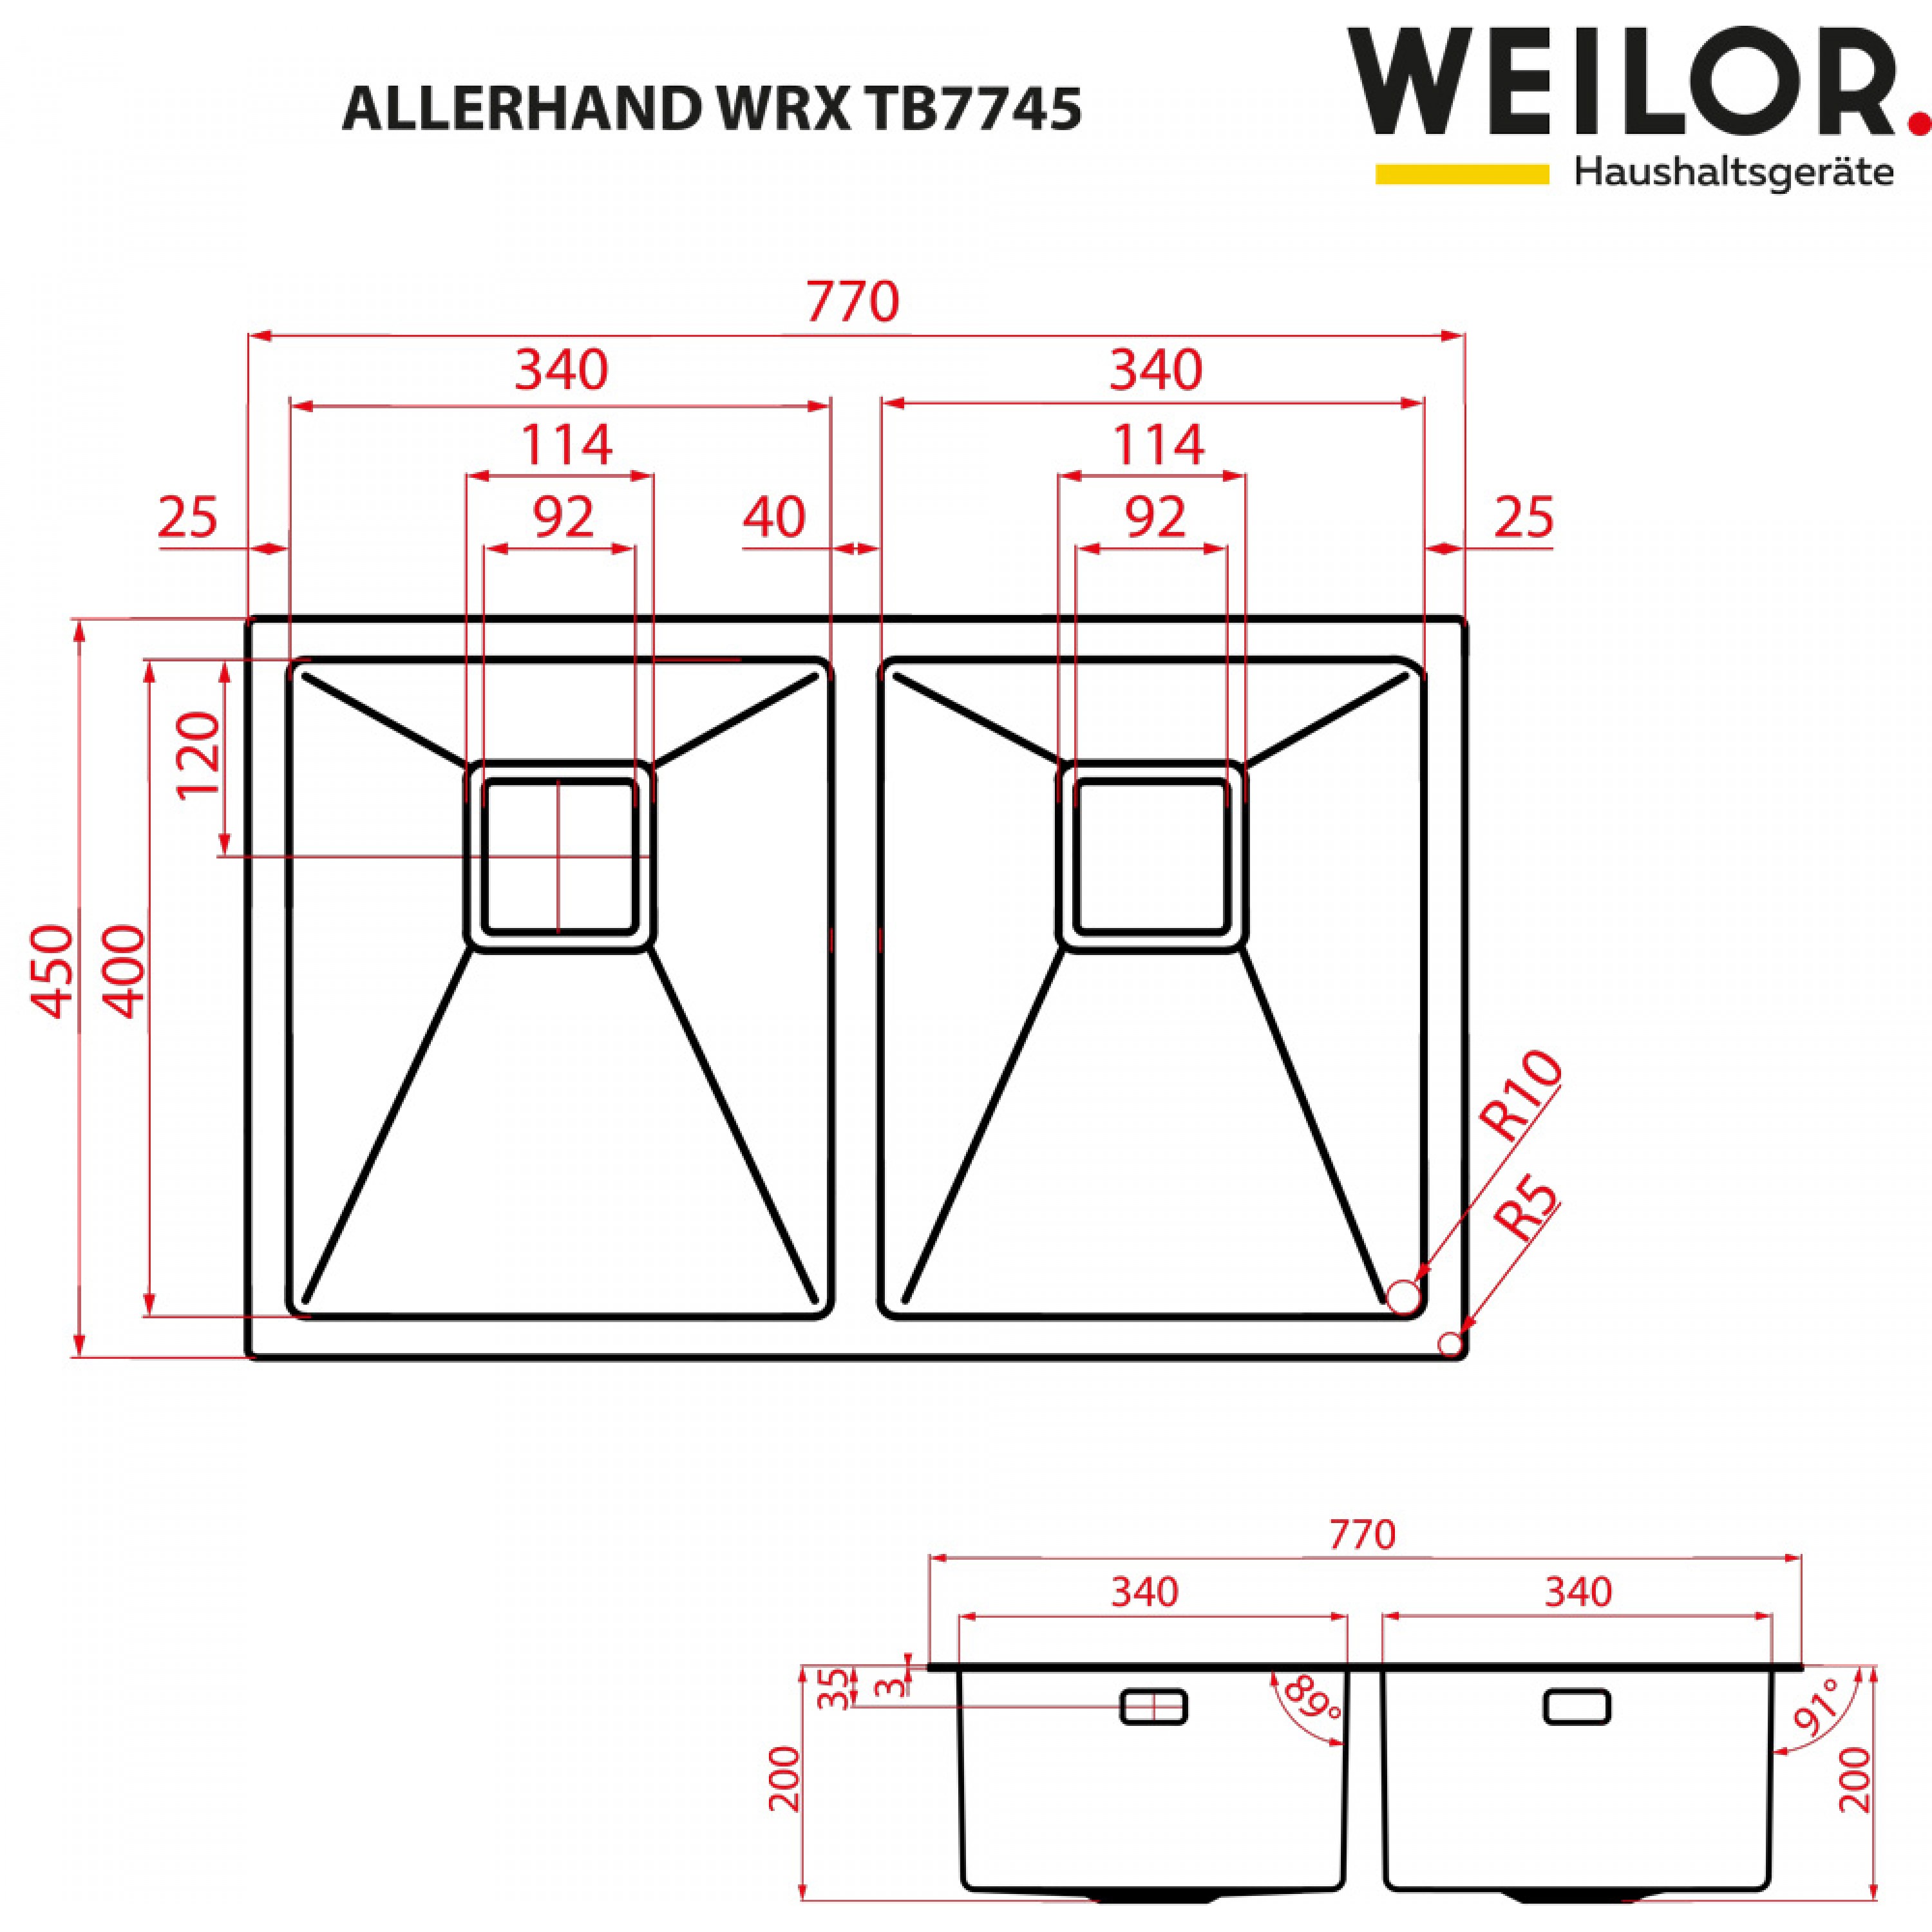 Weilor ALLERHAND WRX TB7745 Габаритные размеры